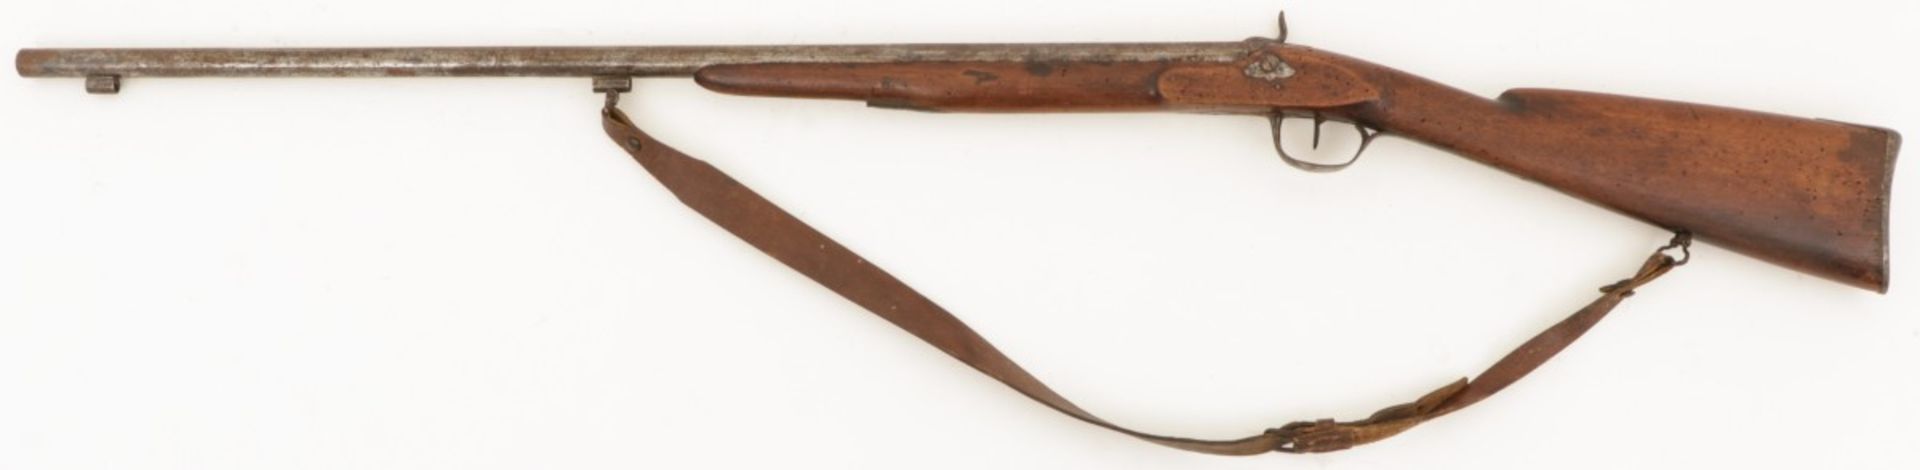 A sapper gun or percussion rifle, late 19th century.